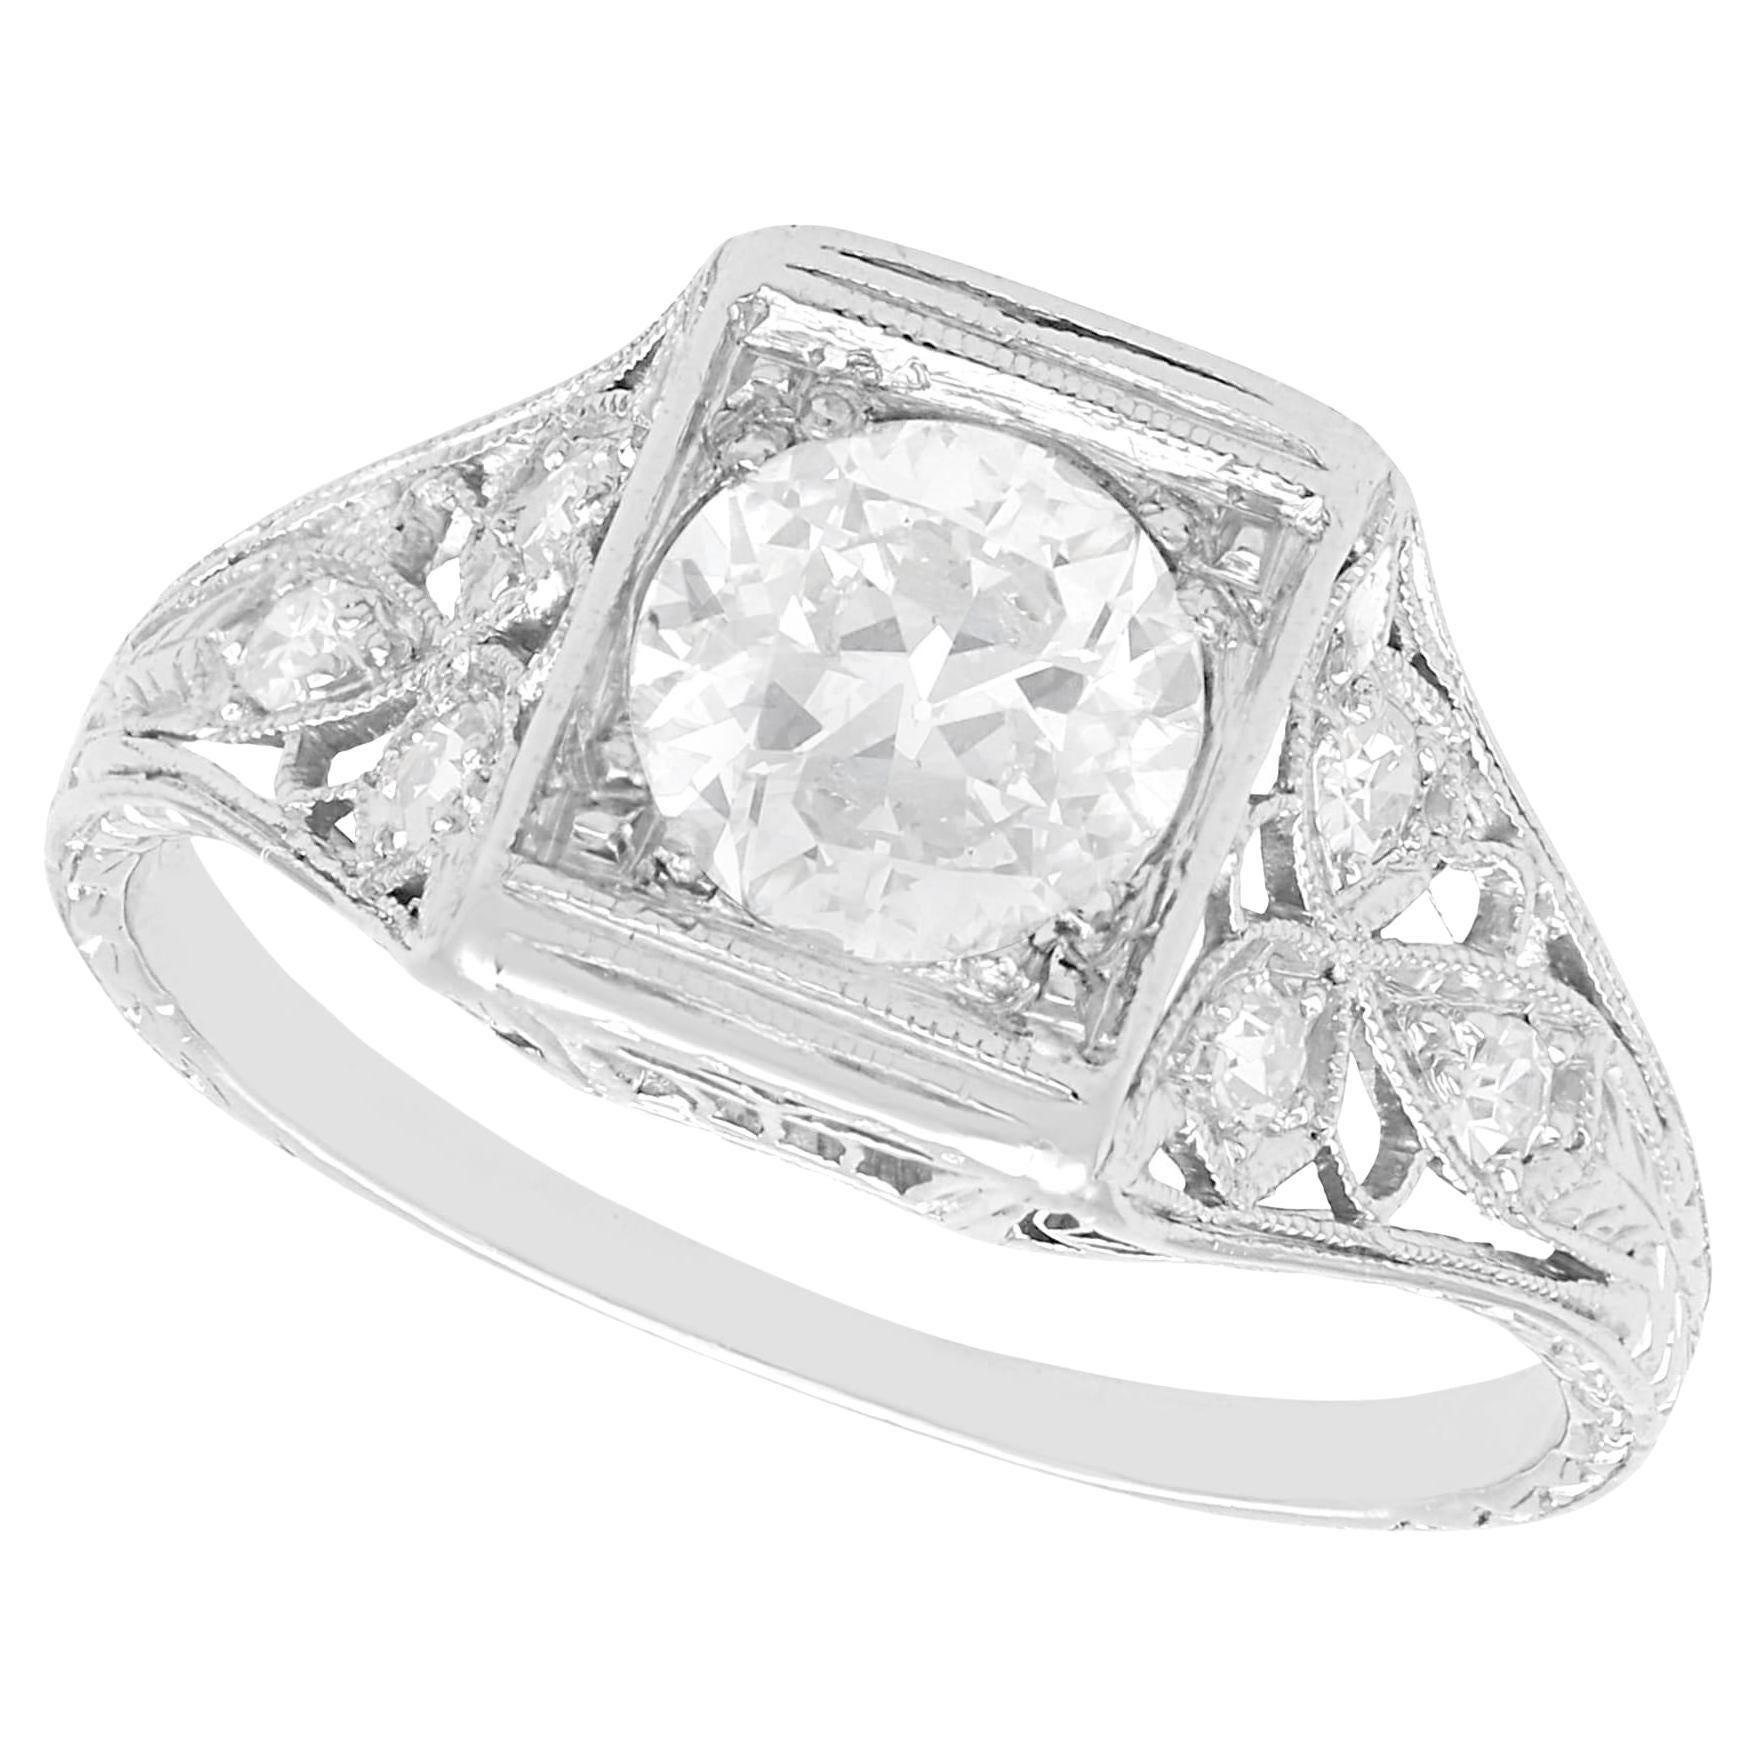 1900s Antique 1.14 Carat Diamond and Platinum Solitaire Ring